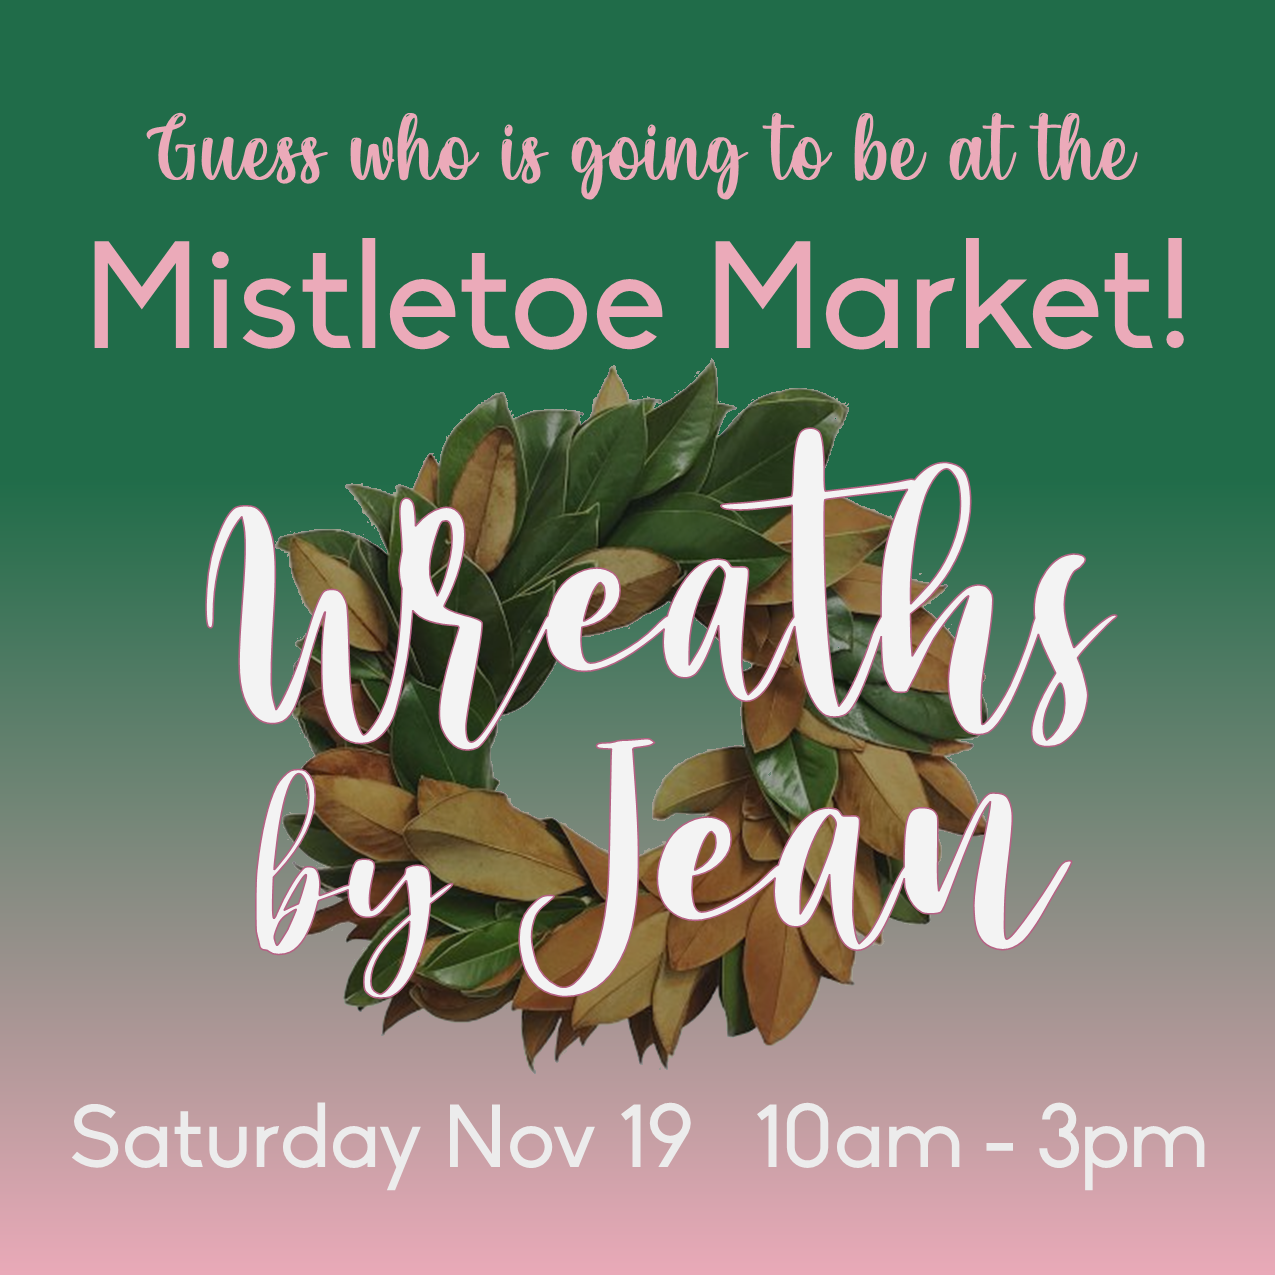 Mistletoe Market guess who Wreaths by Jean.png